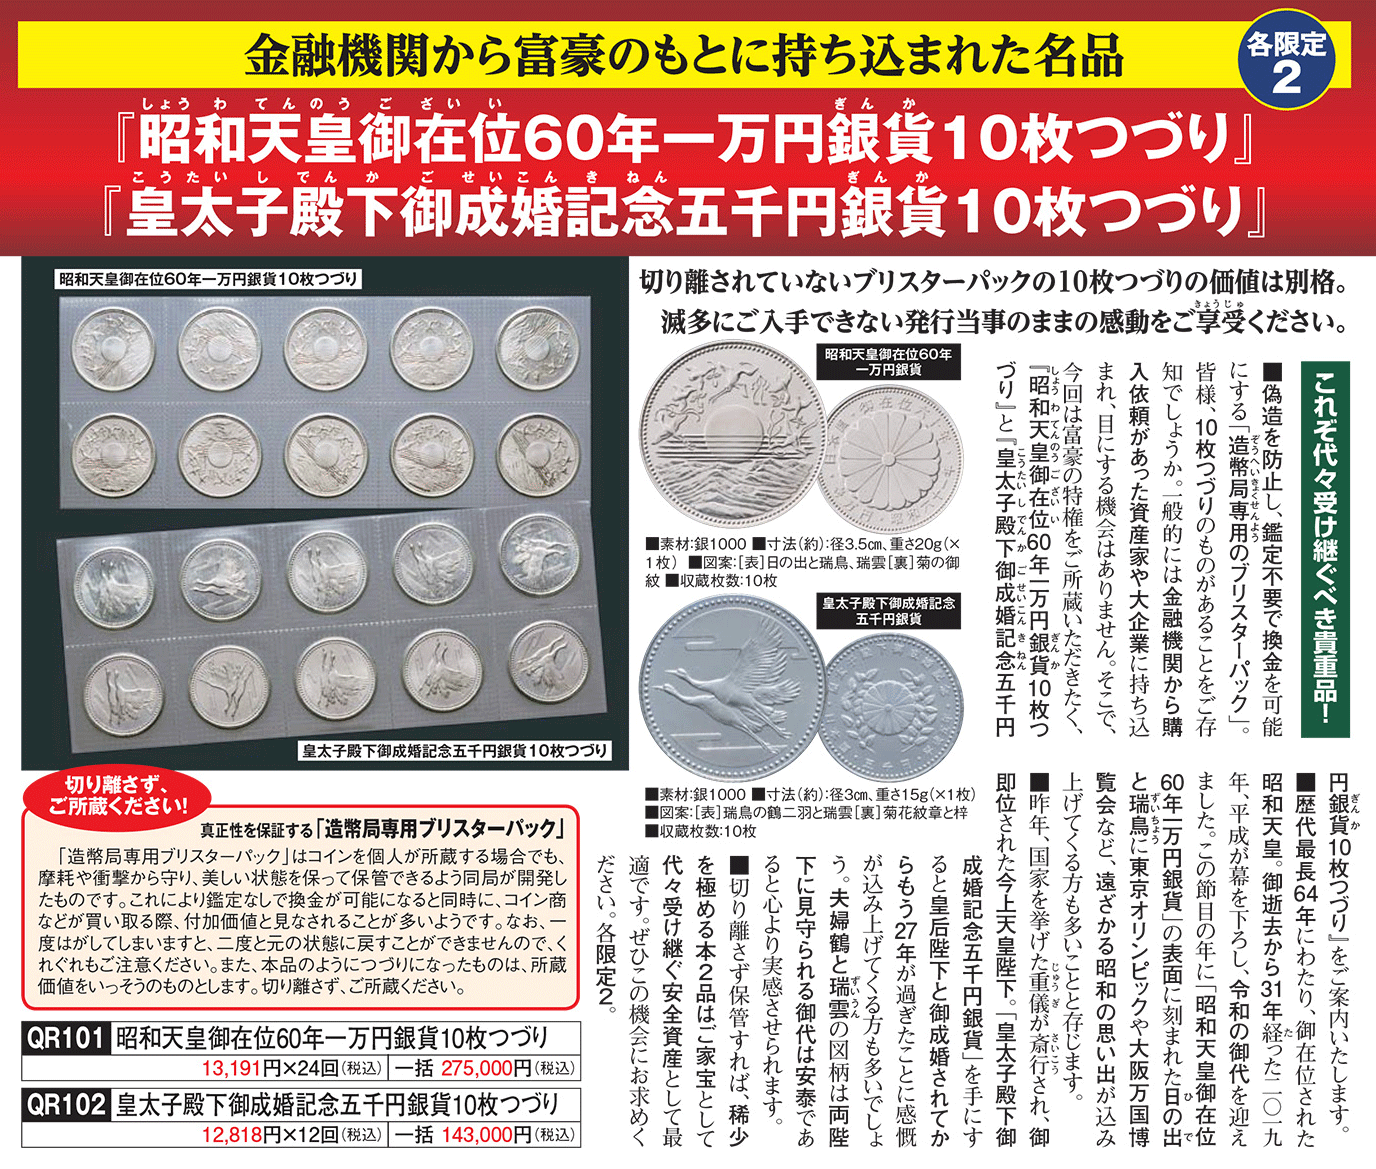 皇太子殿下御成婚記念五千円銀貨10枚つづり』 | 東京書芸館公式通販 